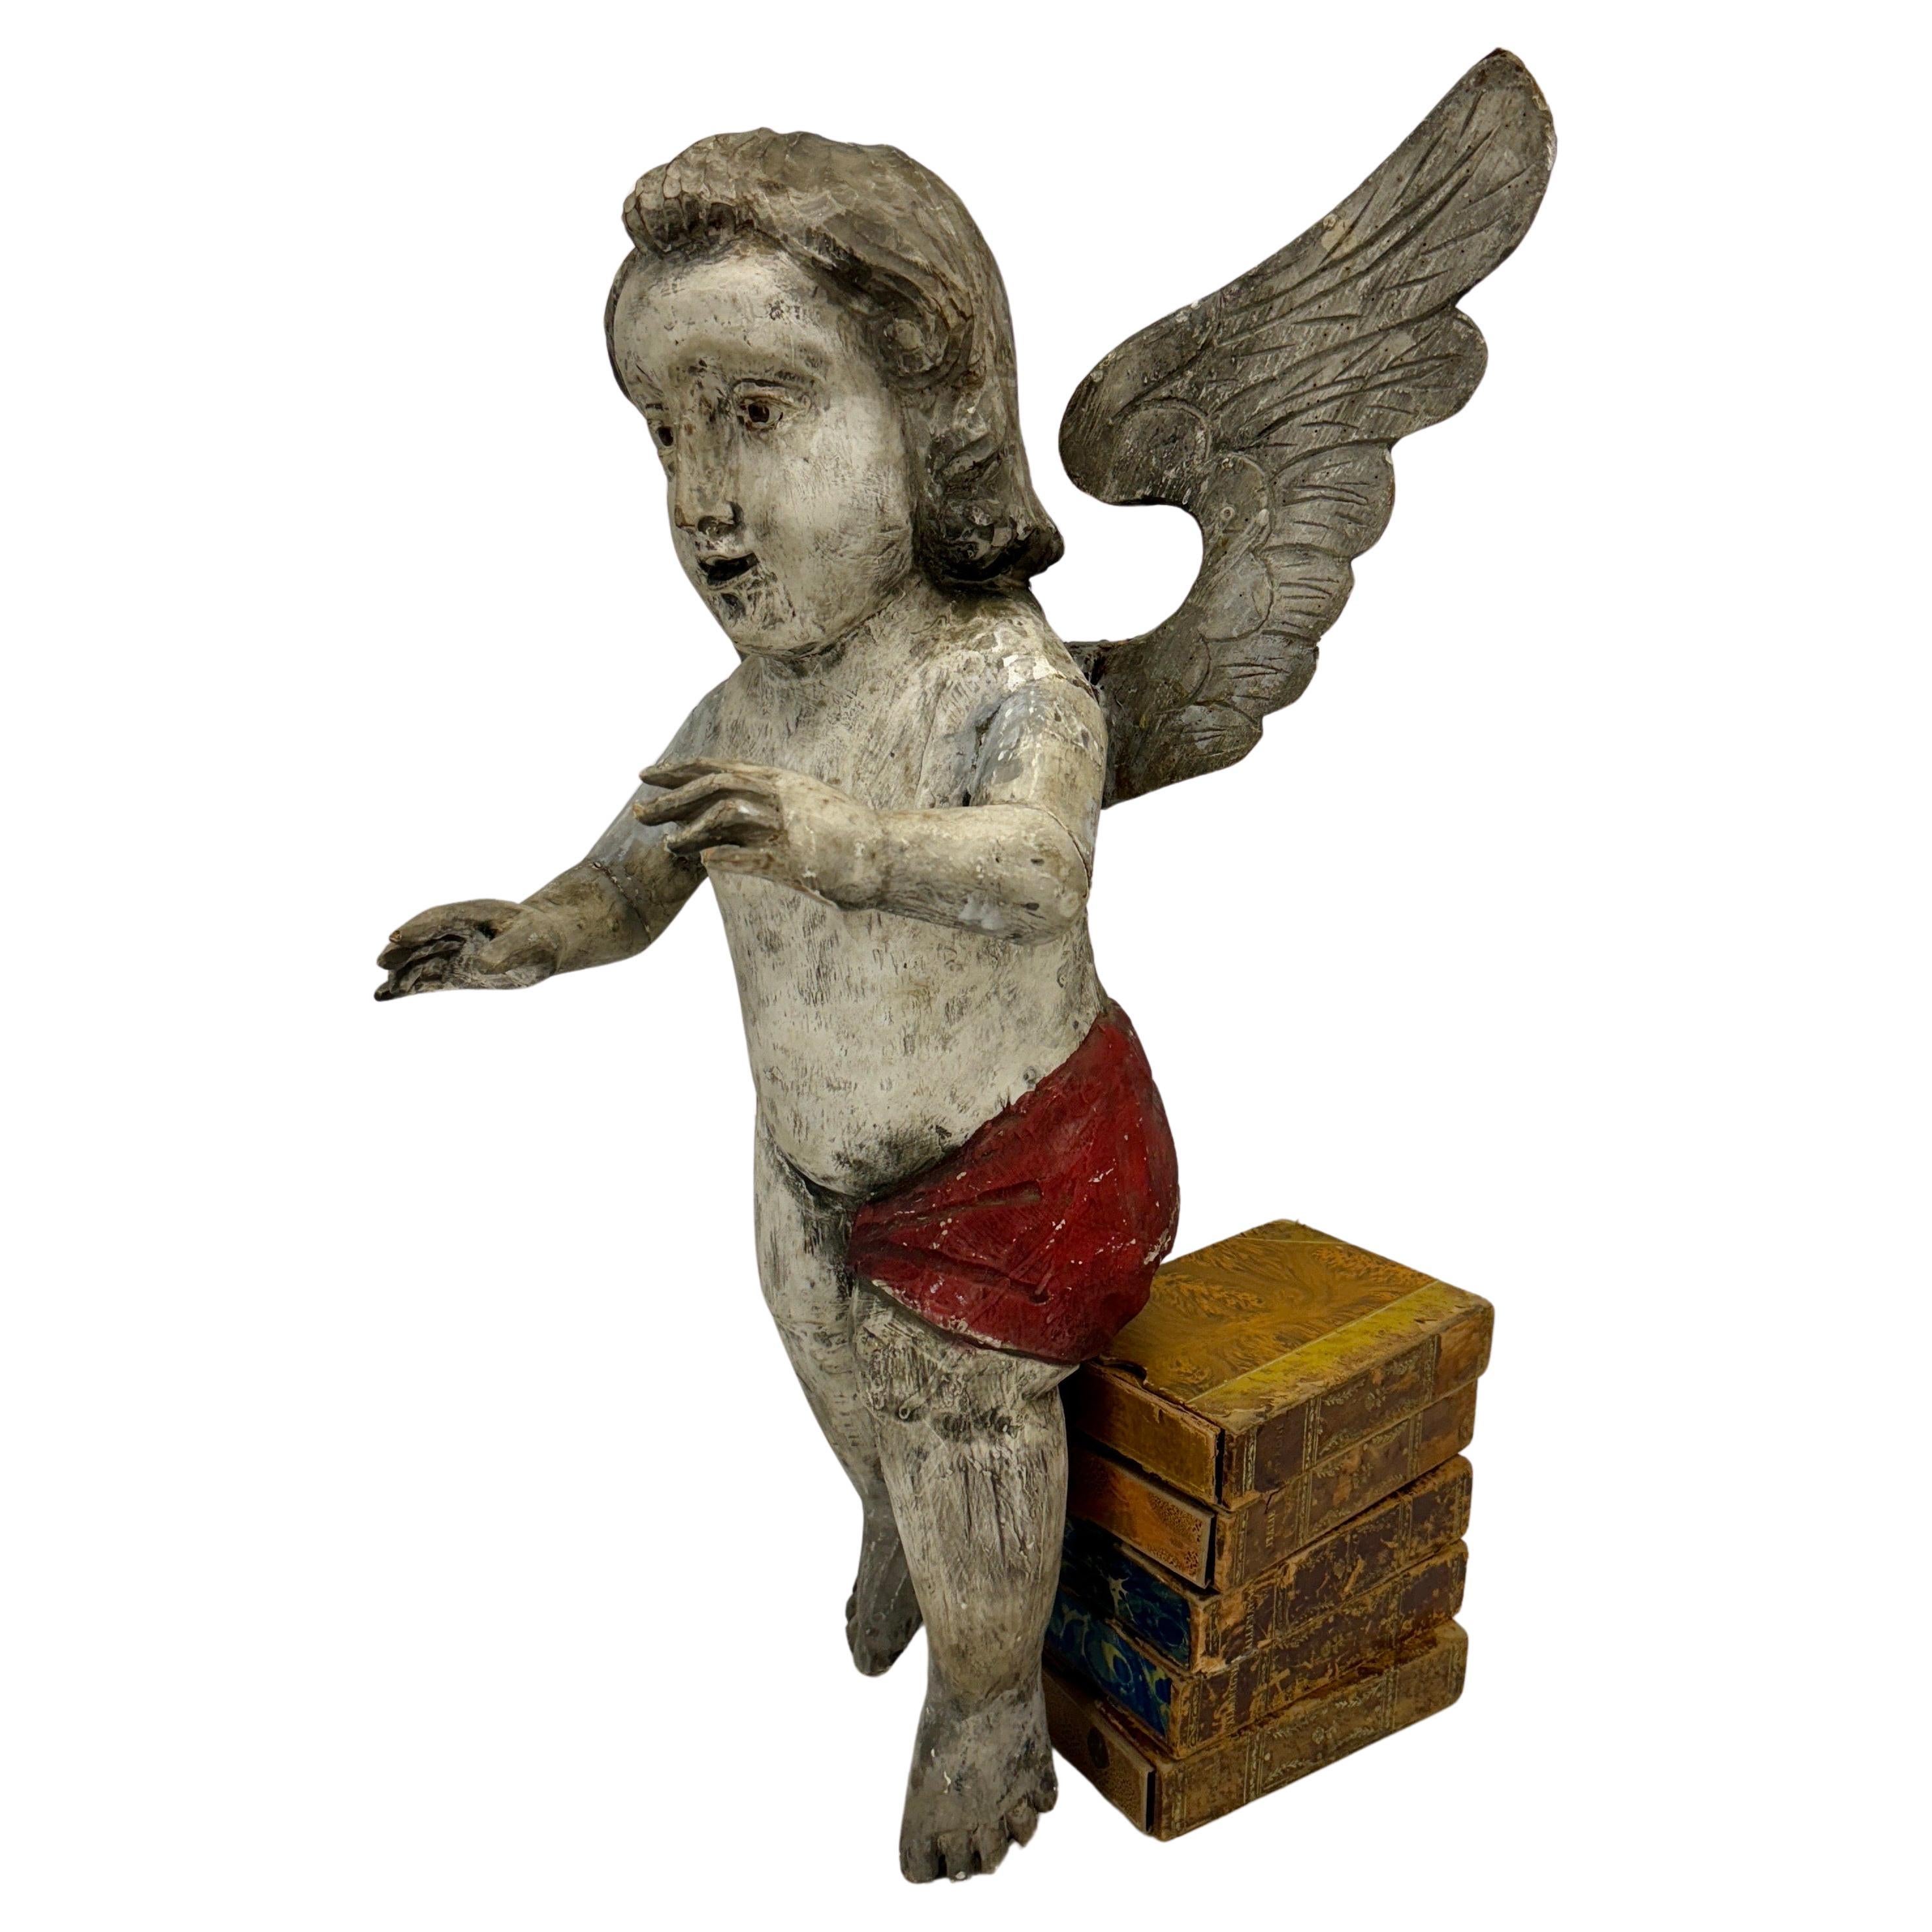 Grande sculpture de Putti, figure d'ange Putti en bois sculpté à la main, vers 1890-1920. 

Chérubin décoratif sculpté à la main avec énormément de caractère et de charme ayant gardé sa patine d'origine. Détails complexes des cheveux, des mains et